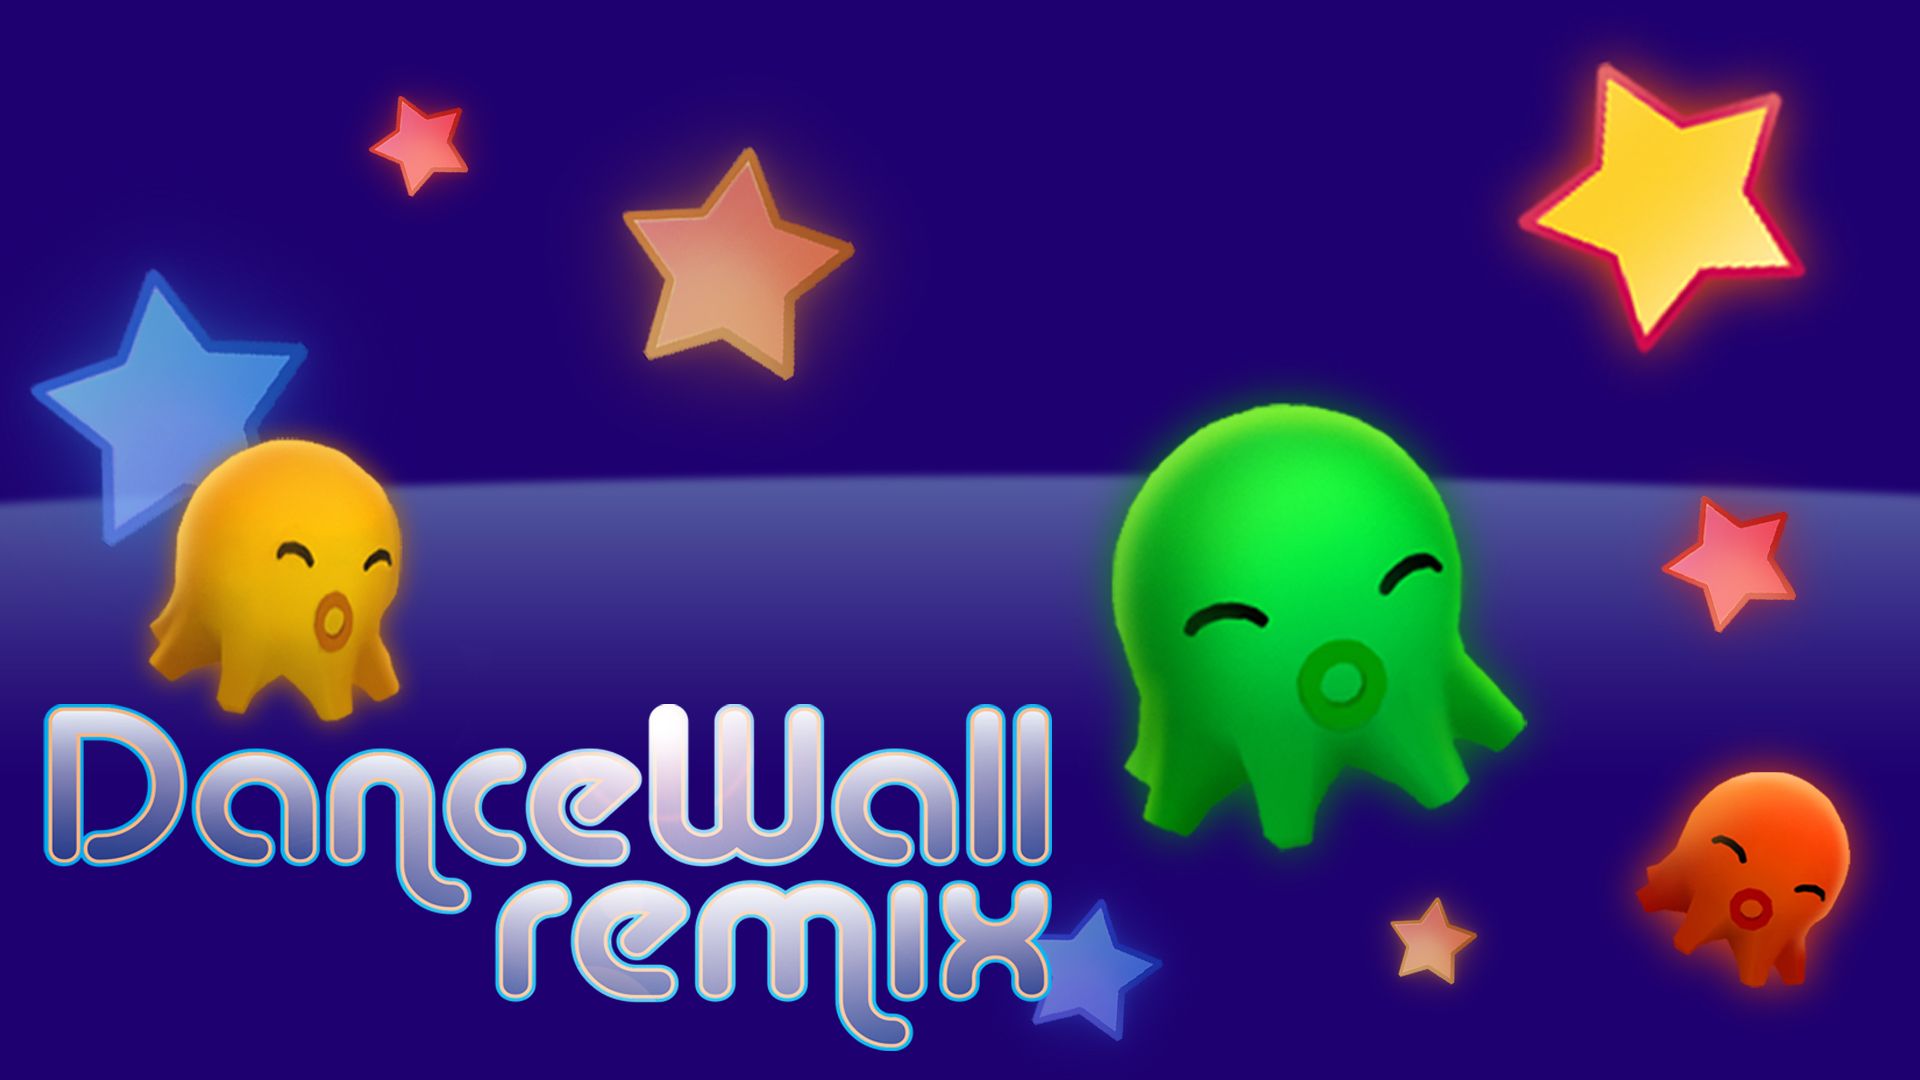 DanceWall Remix HD wallpapers, Desktop wallpaper - most viewed